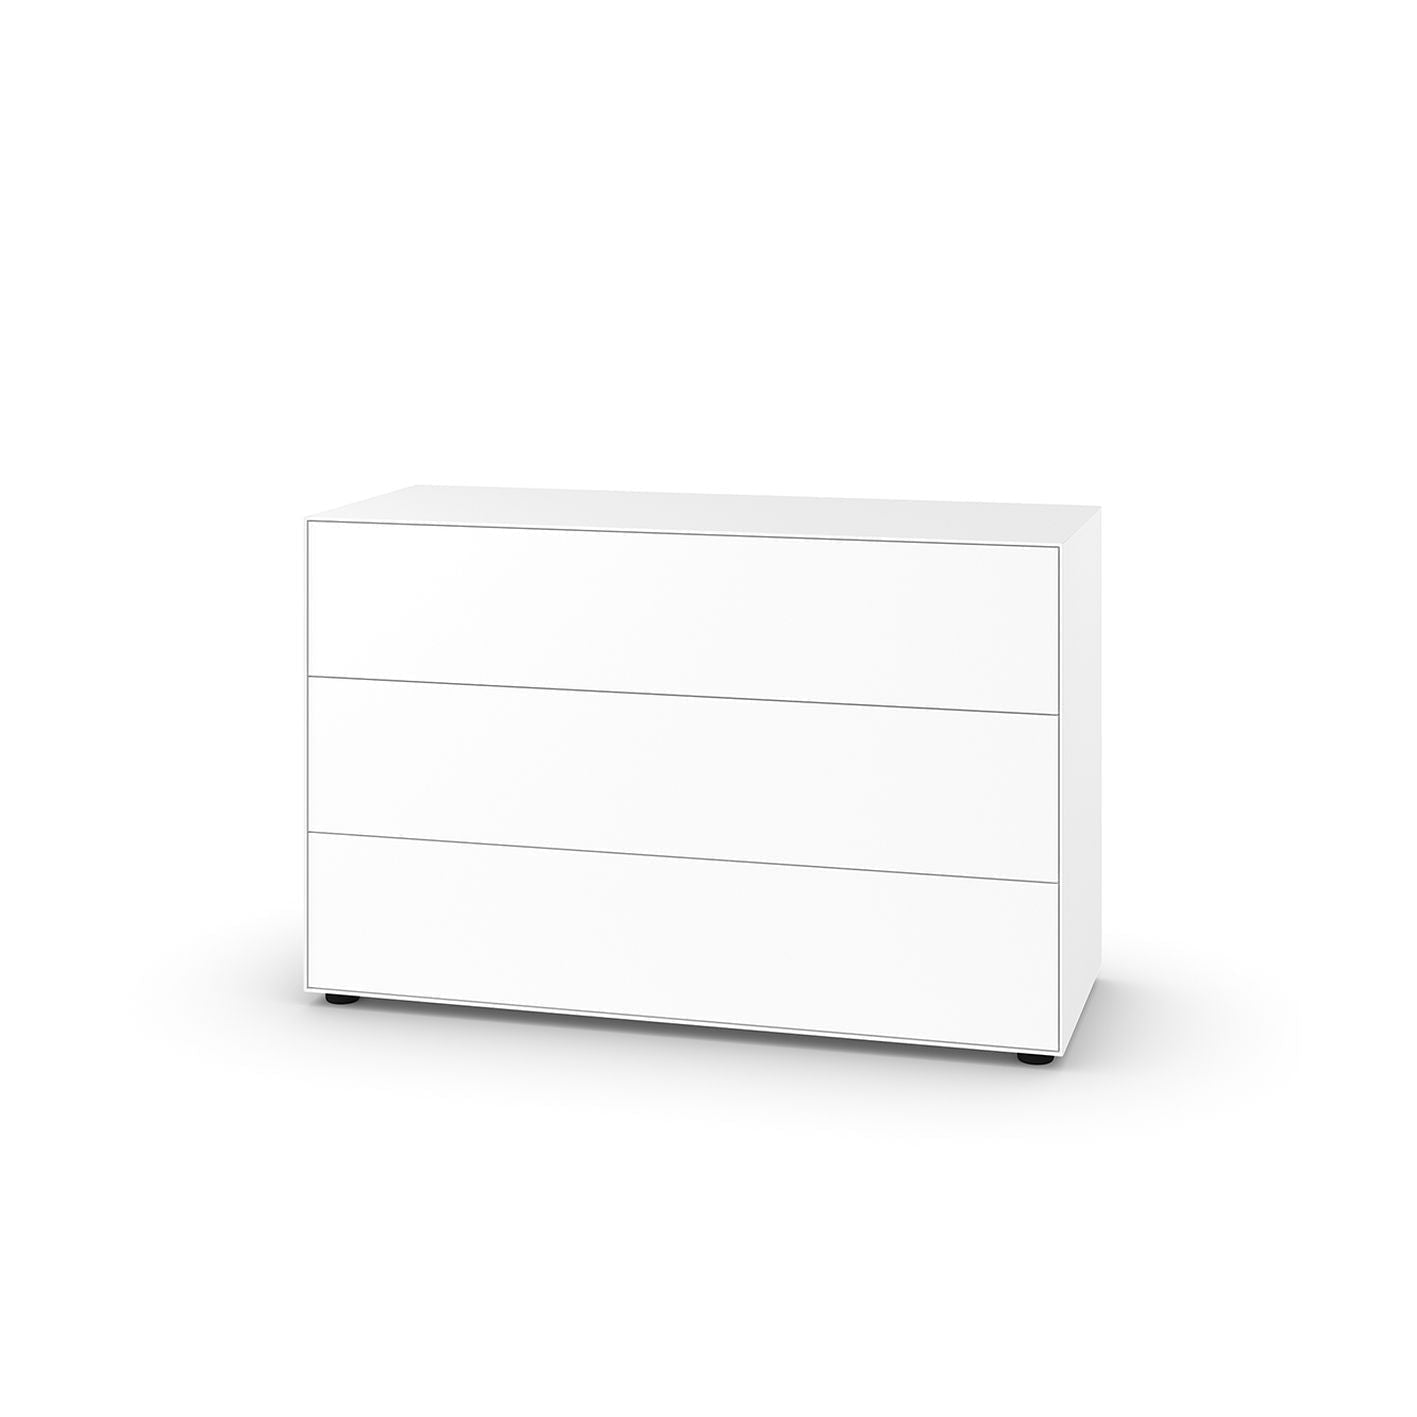 Piure Nex Pur Box -låda HXB 75x120 cm, 3 lådor, vita